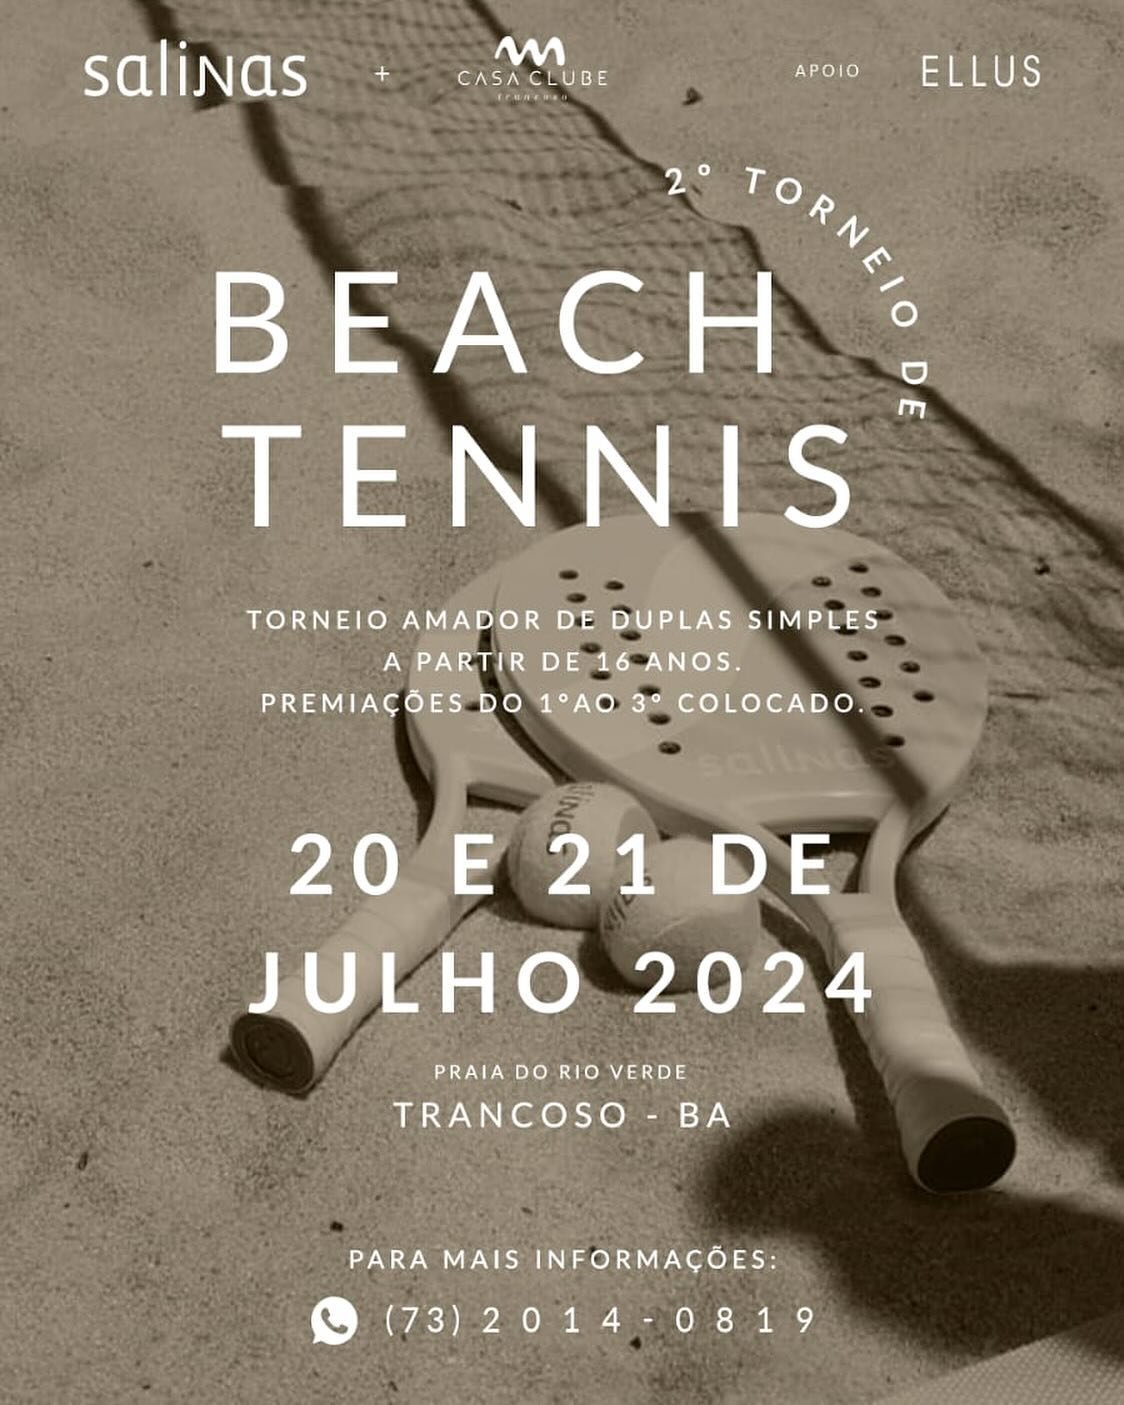 Vem a&iacute; o 2 torneio de Beach Tennis @casaclubetrancoso @salinas !
Dias 20 e 21 de julho!
Categorias feminino e masculino, acima de 16 anos. Vagas limitadas! 
Informa&ccedil;&otilde;es e inscri&ccedil;&otilde;es via whatsapp (73) 2014.0819
☀️👙⛱